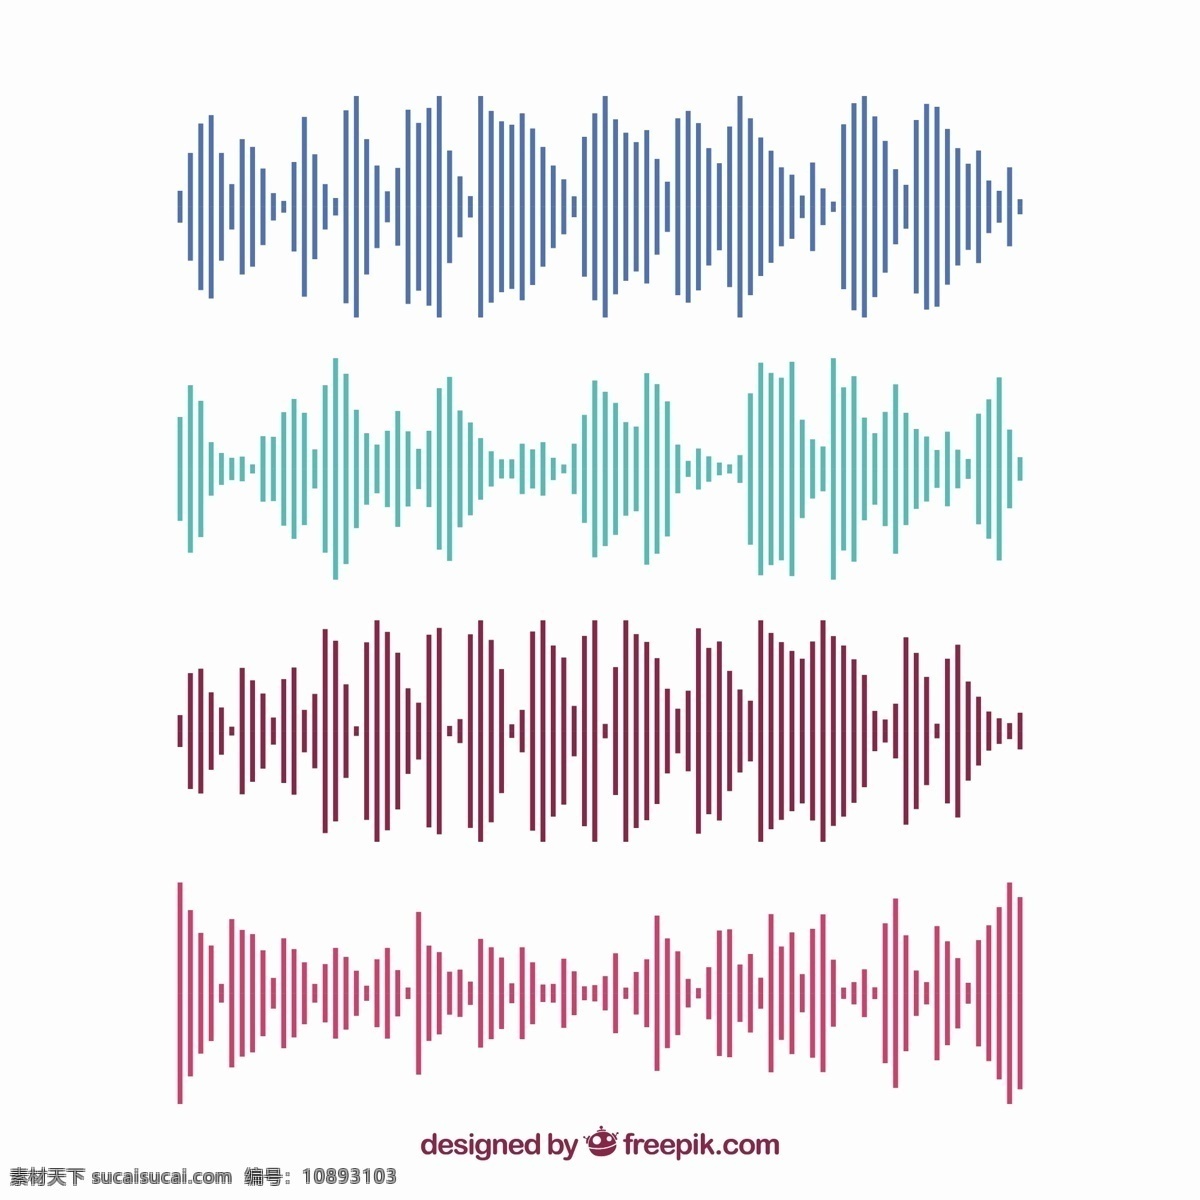 彩色 声波 线 收藏 音乐 抽象 技术 线条 色彩 波浪 数字 抽象线条 声音 抽象波 音频 录音 轨迹 均衡器 歌曲 音量 水平